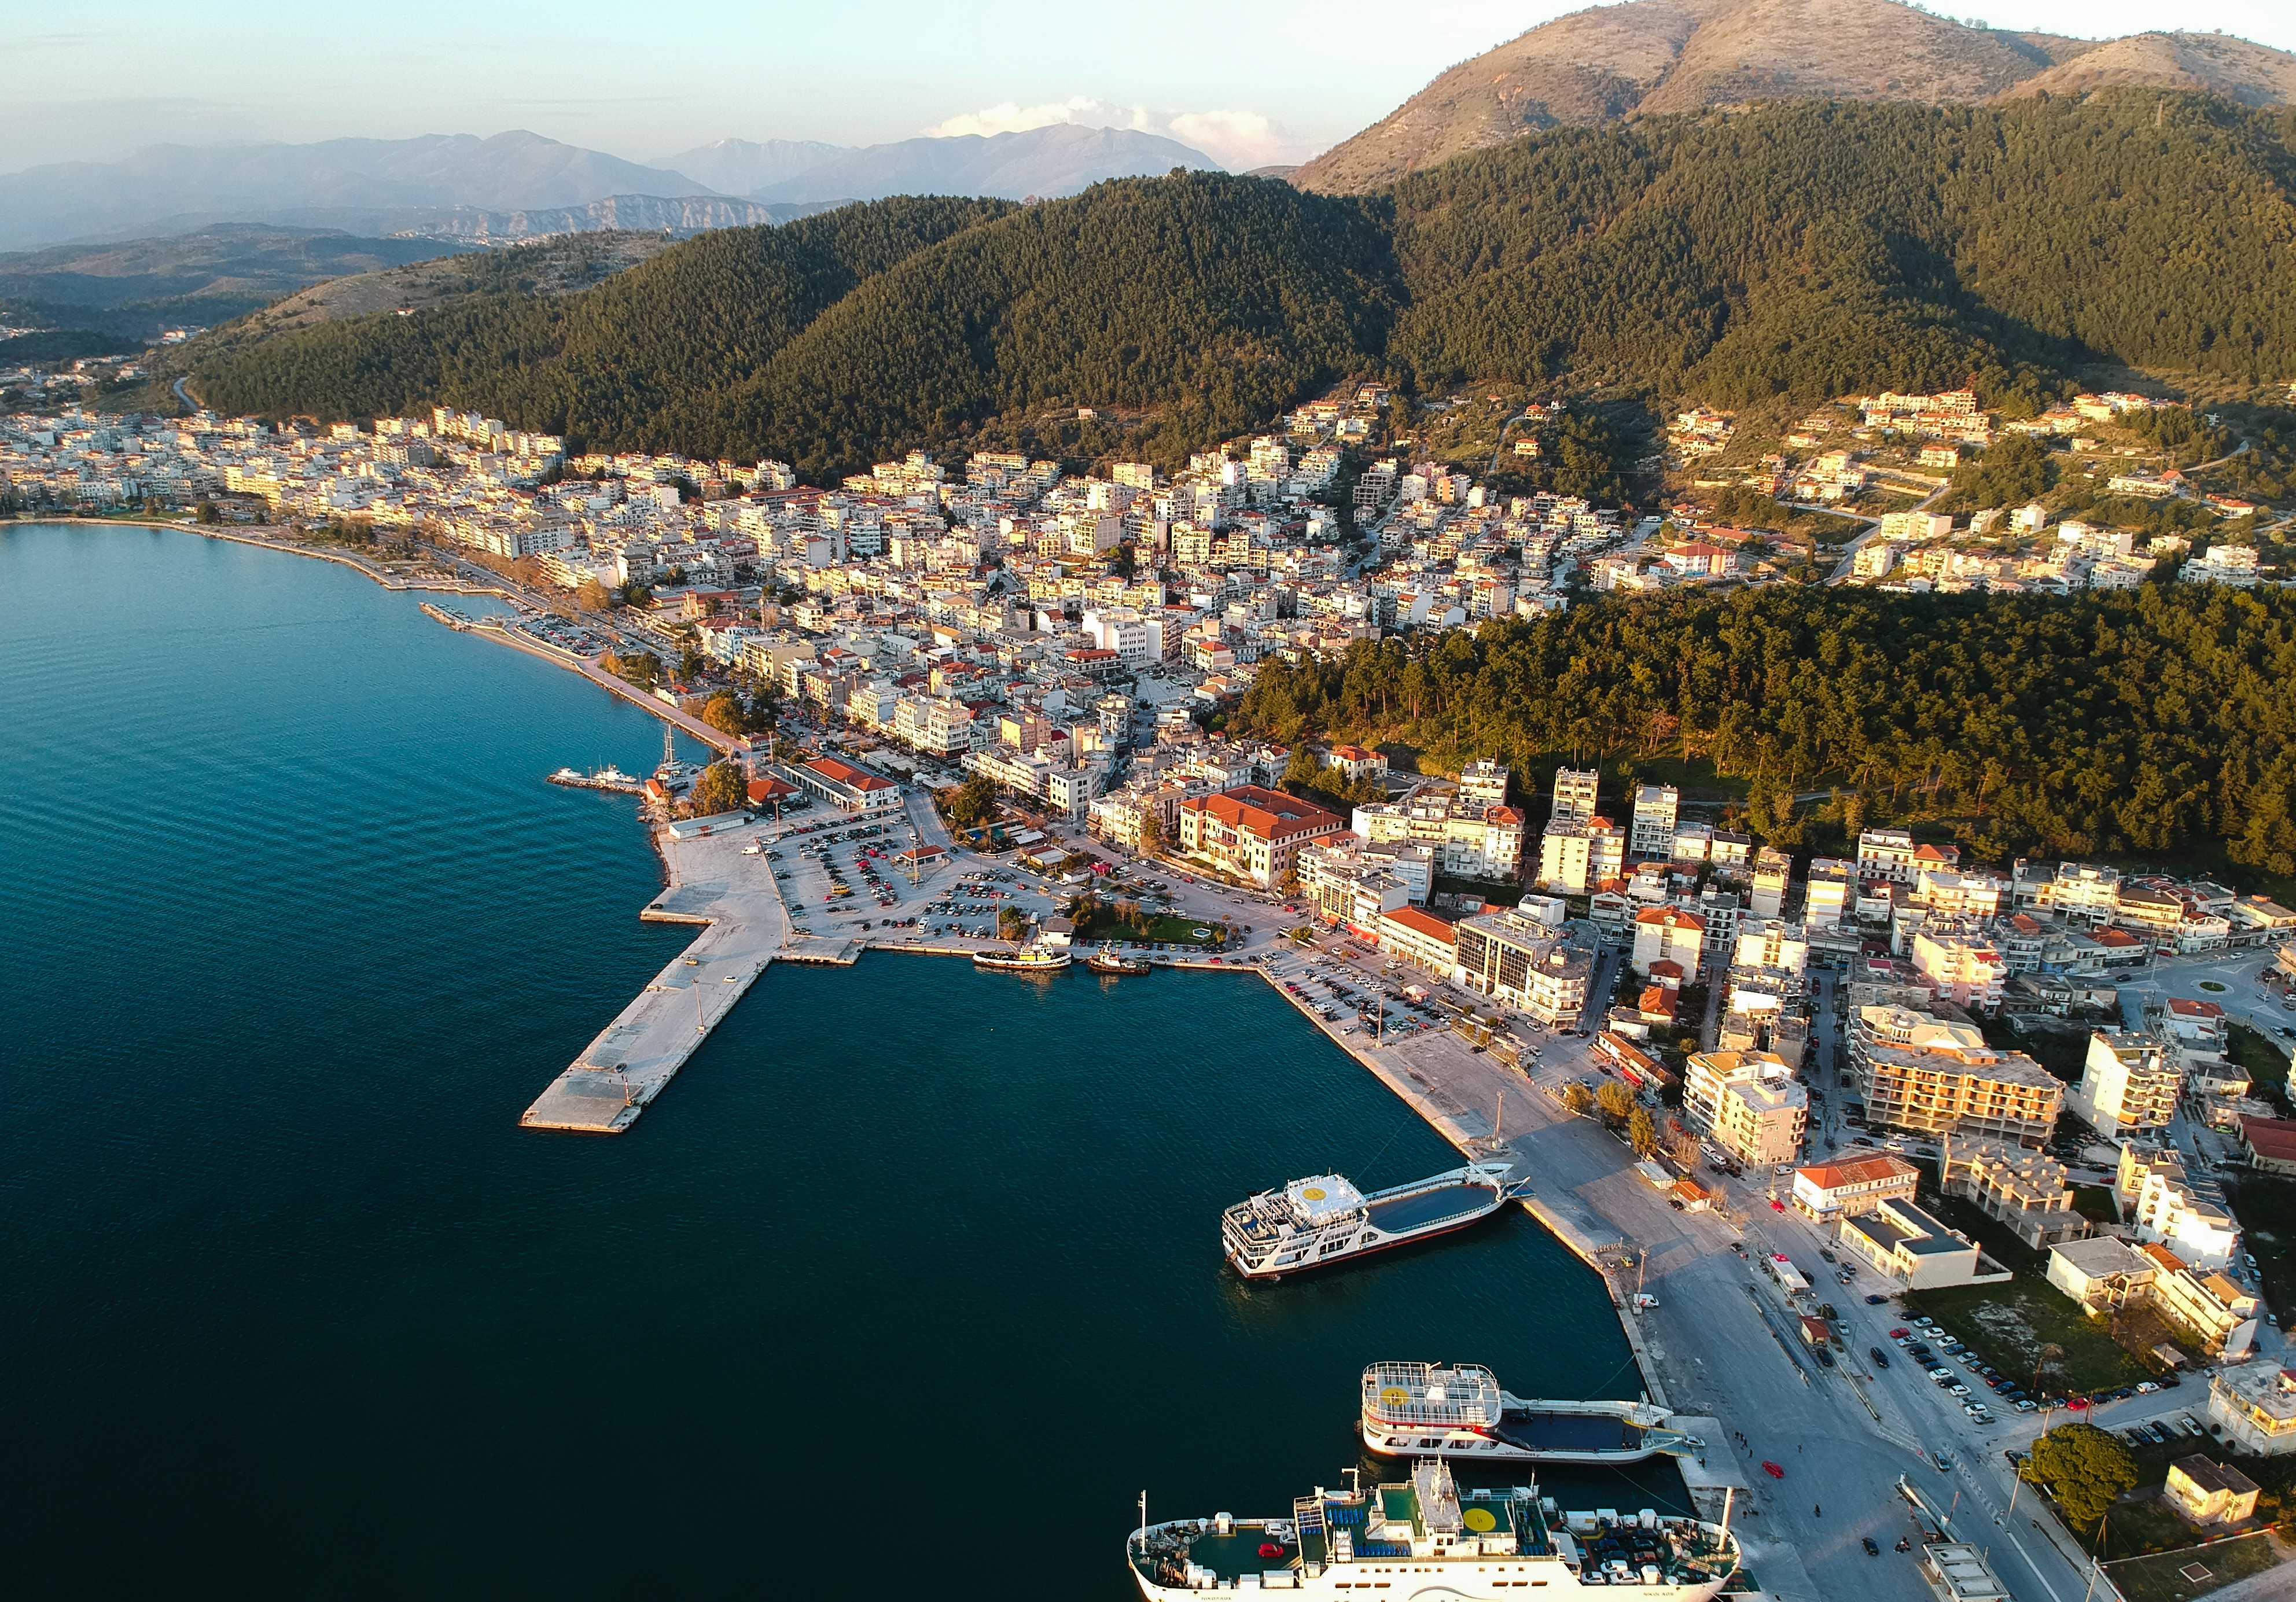 Η περιοχή της Ελλάδας που οι ξένοι έχουν πάθει παροξυσμό με την ομορφιά του και αγοράζουν σπίτια - Όχι, δεν είναι νησί